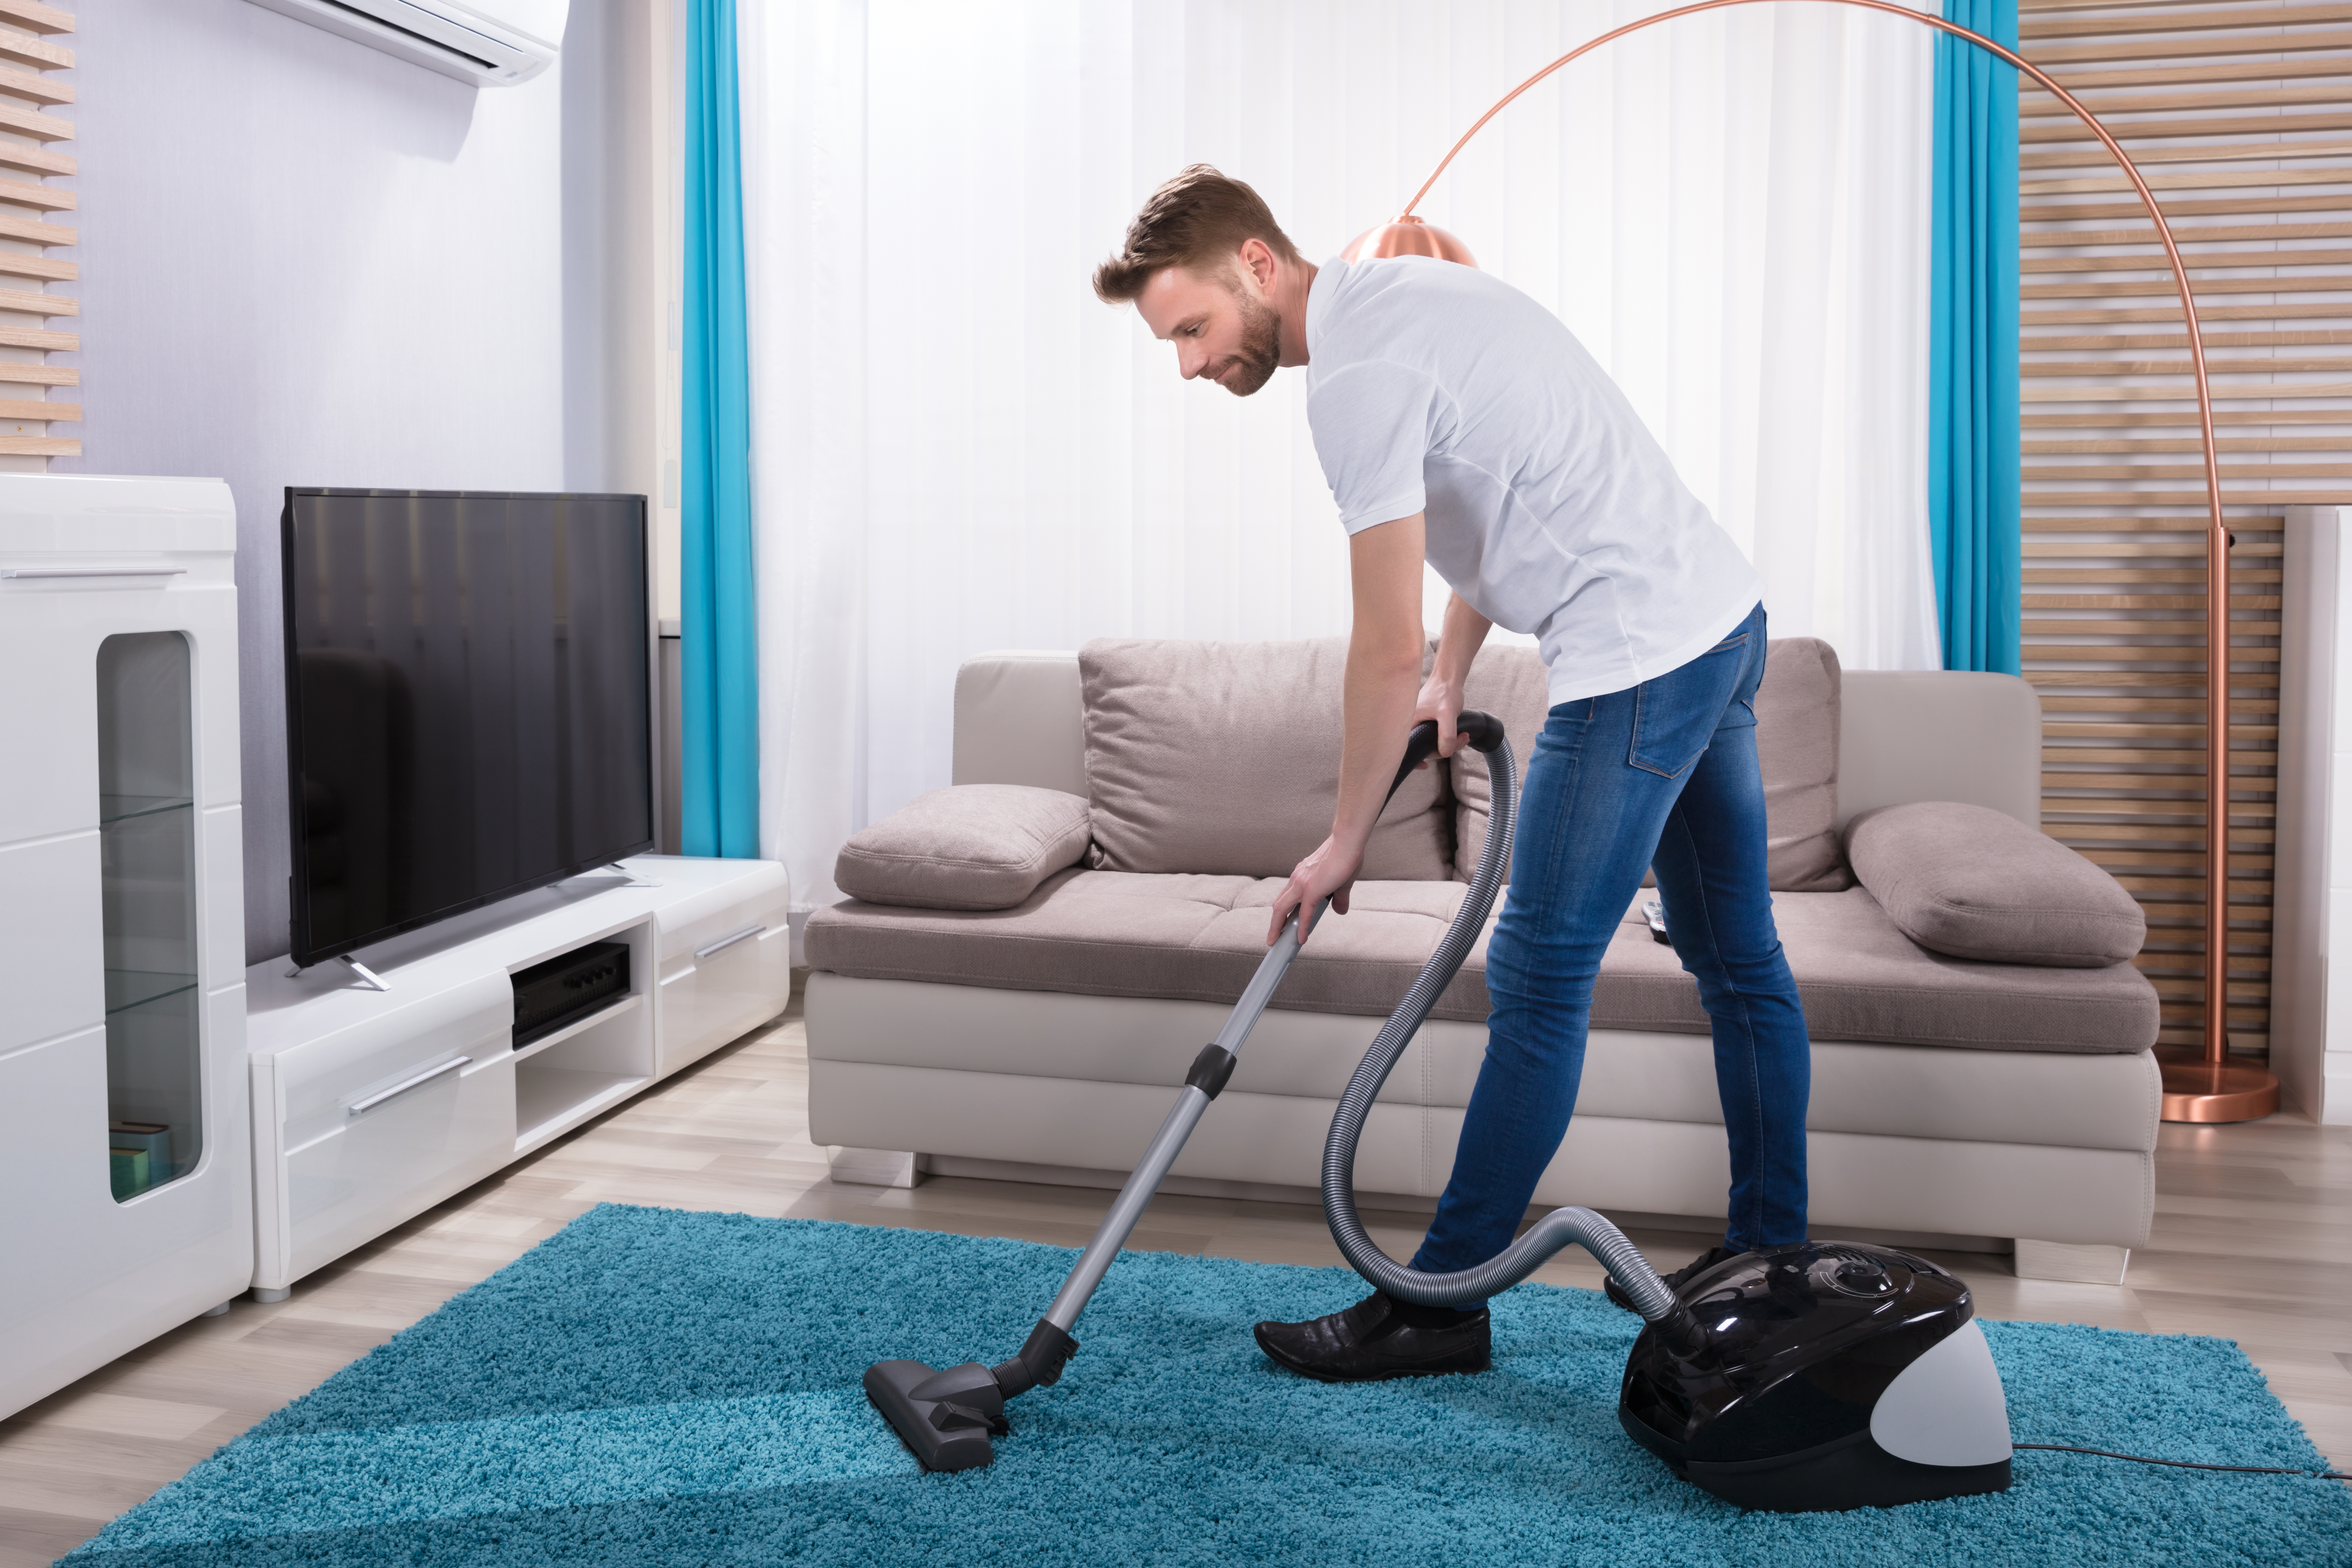 Man vacuuming rug in living room.